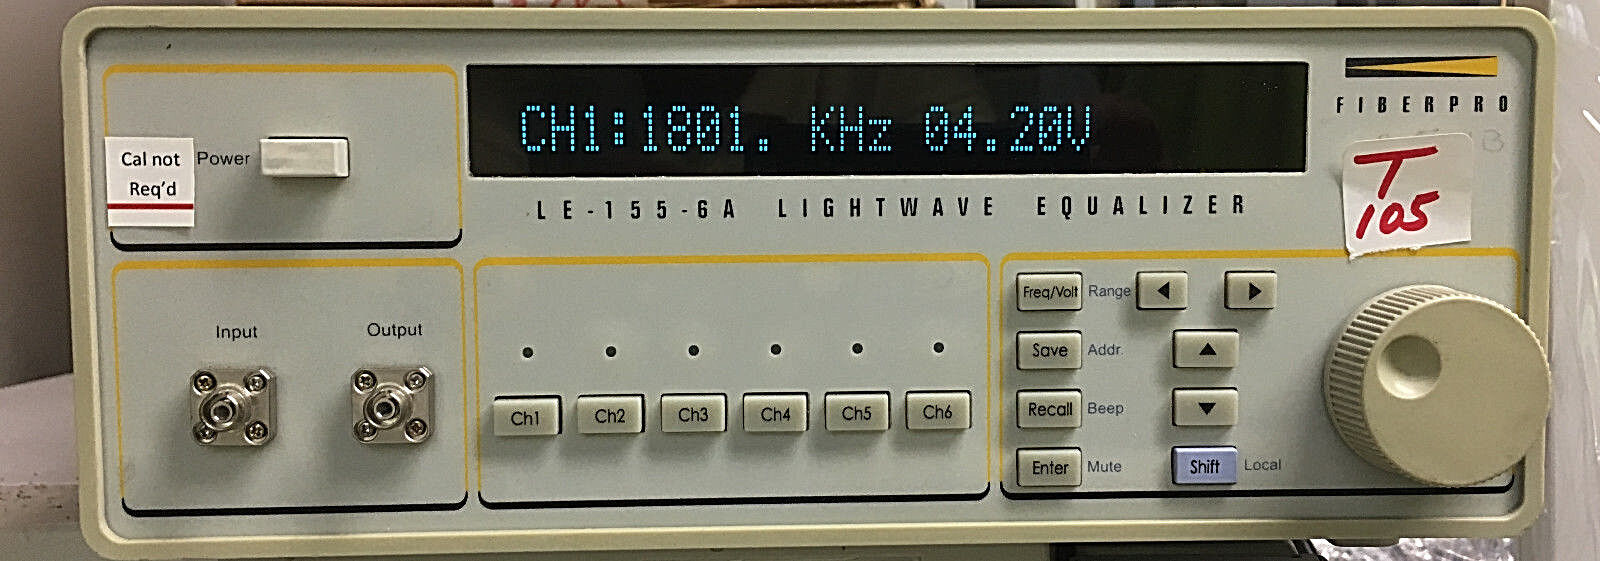  FiberPro LE-155-6A Lightwave equalizer